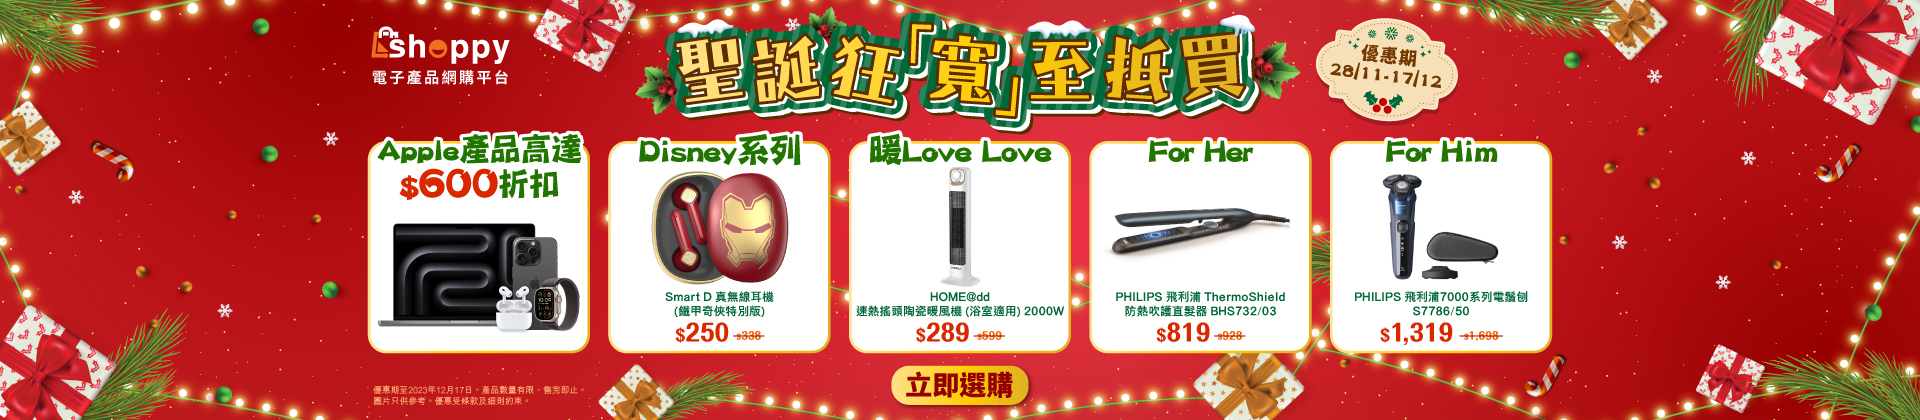 還有更多詳情/圖片HKBN 香港寬頻 Shoppy電子產品聖誕狂「寬」優惠：Apple / Samsung 手機$1800折扣，包幫到你搵到最正嘅優惠呀！